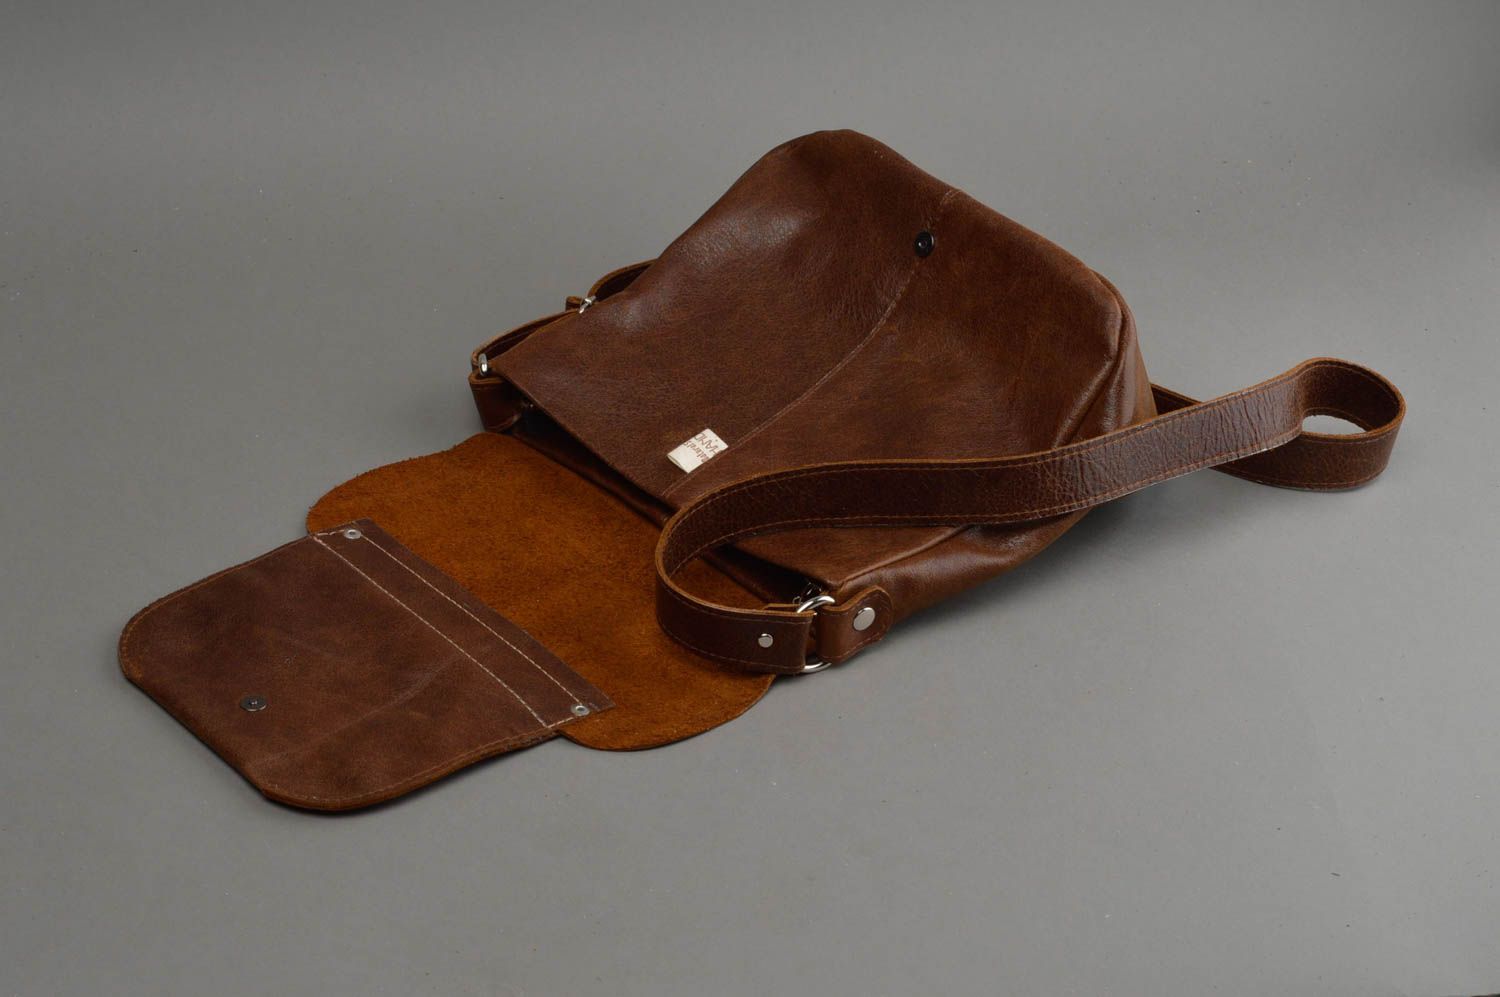 Unusual handmade leather handbag designer shoulder bag leather goods for her photo 2